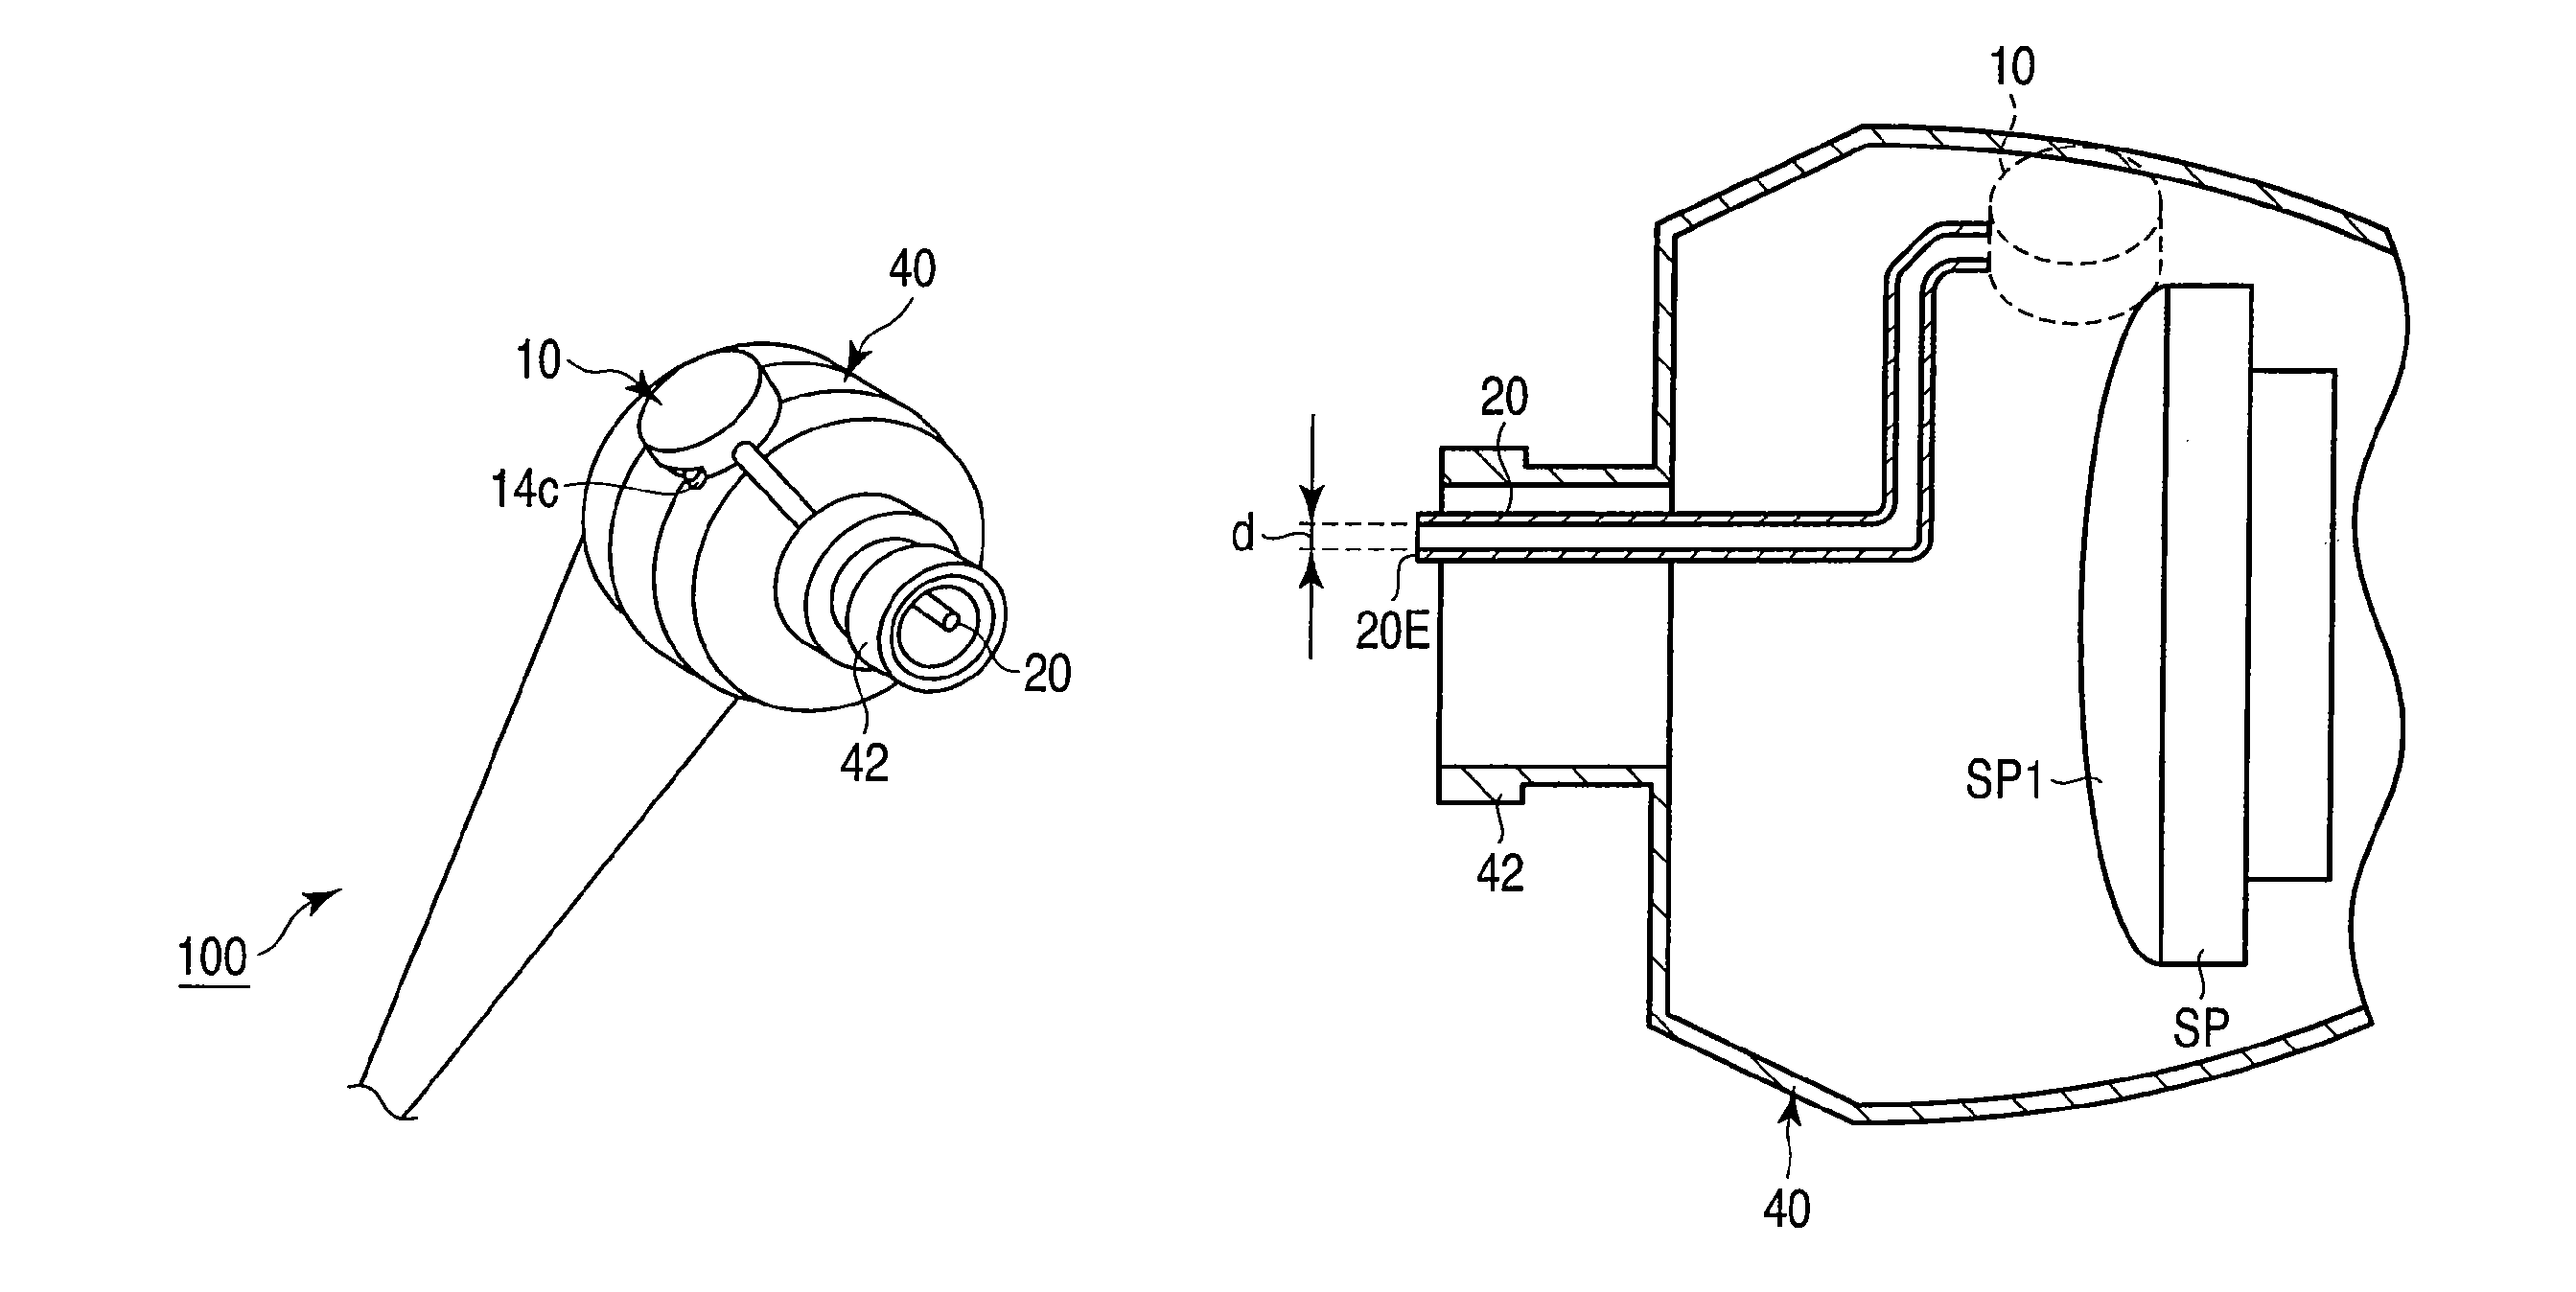 Electro-acoustic conversion apparatus